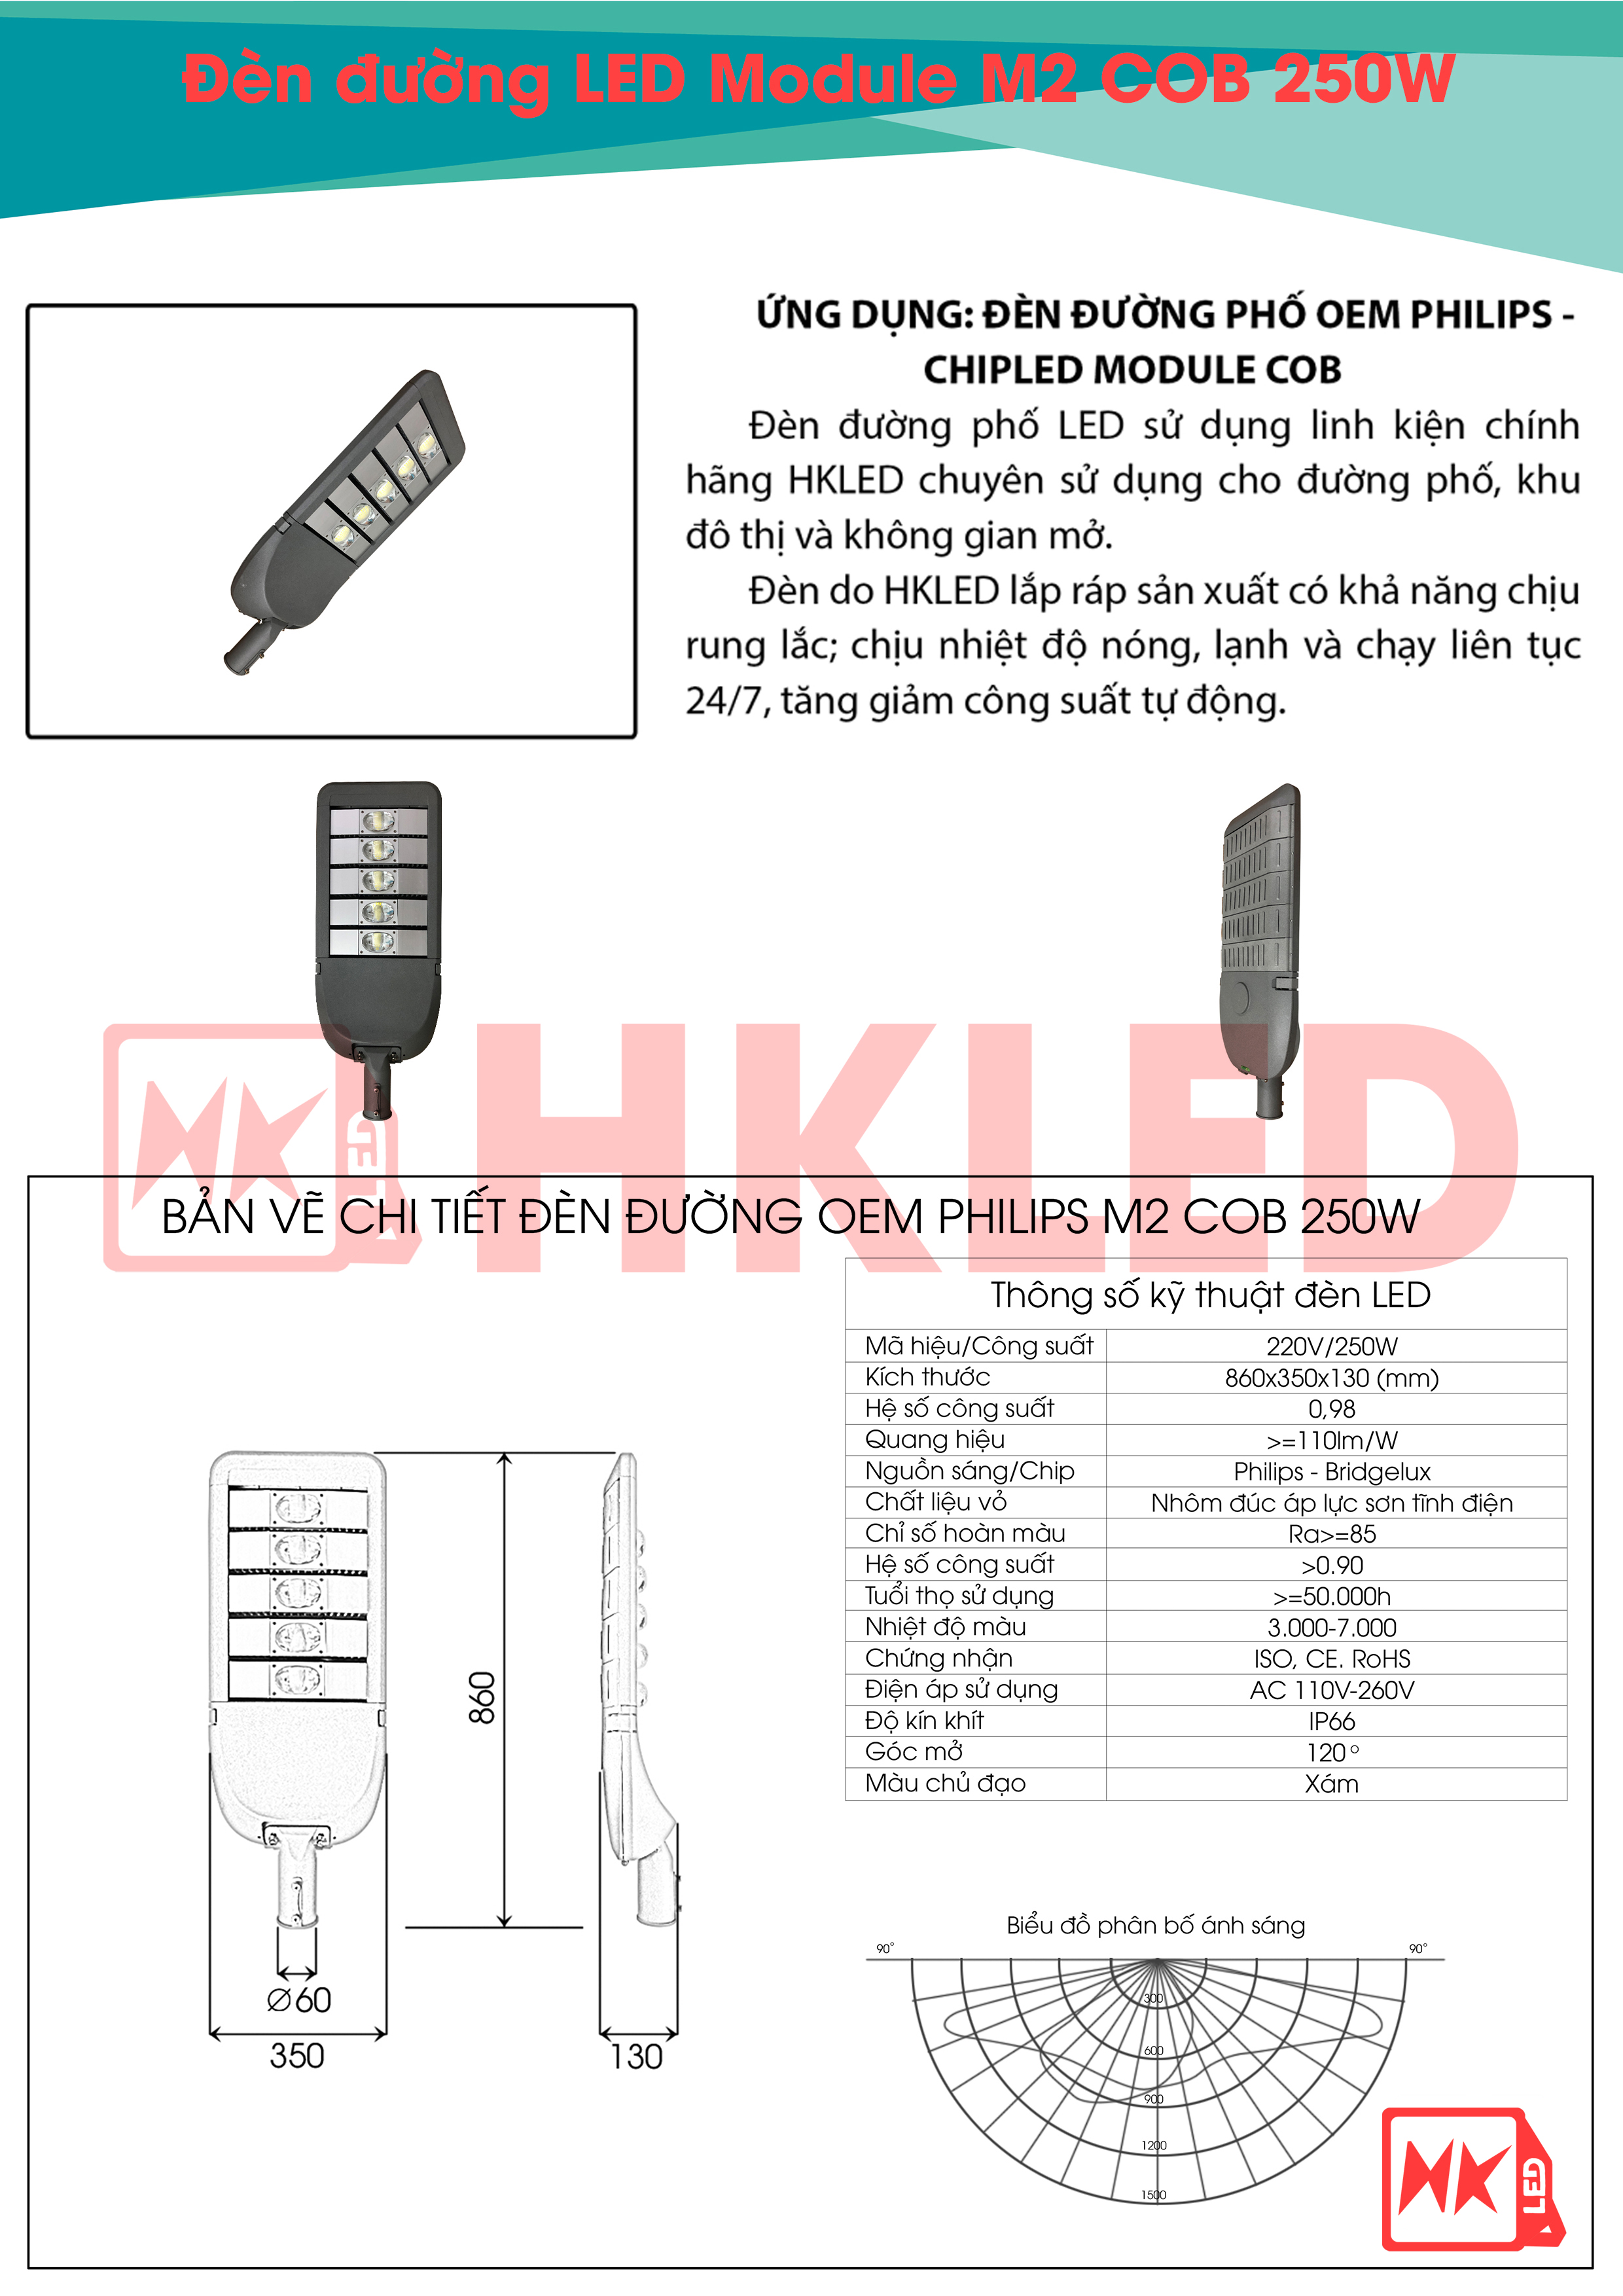 Ứng dụng, bản vẽ chi tiết và thông số kỹ thuật đèn đường LED OEM Philips M2 Module COB 250W